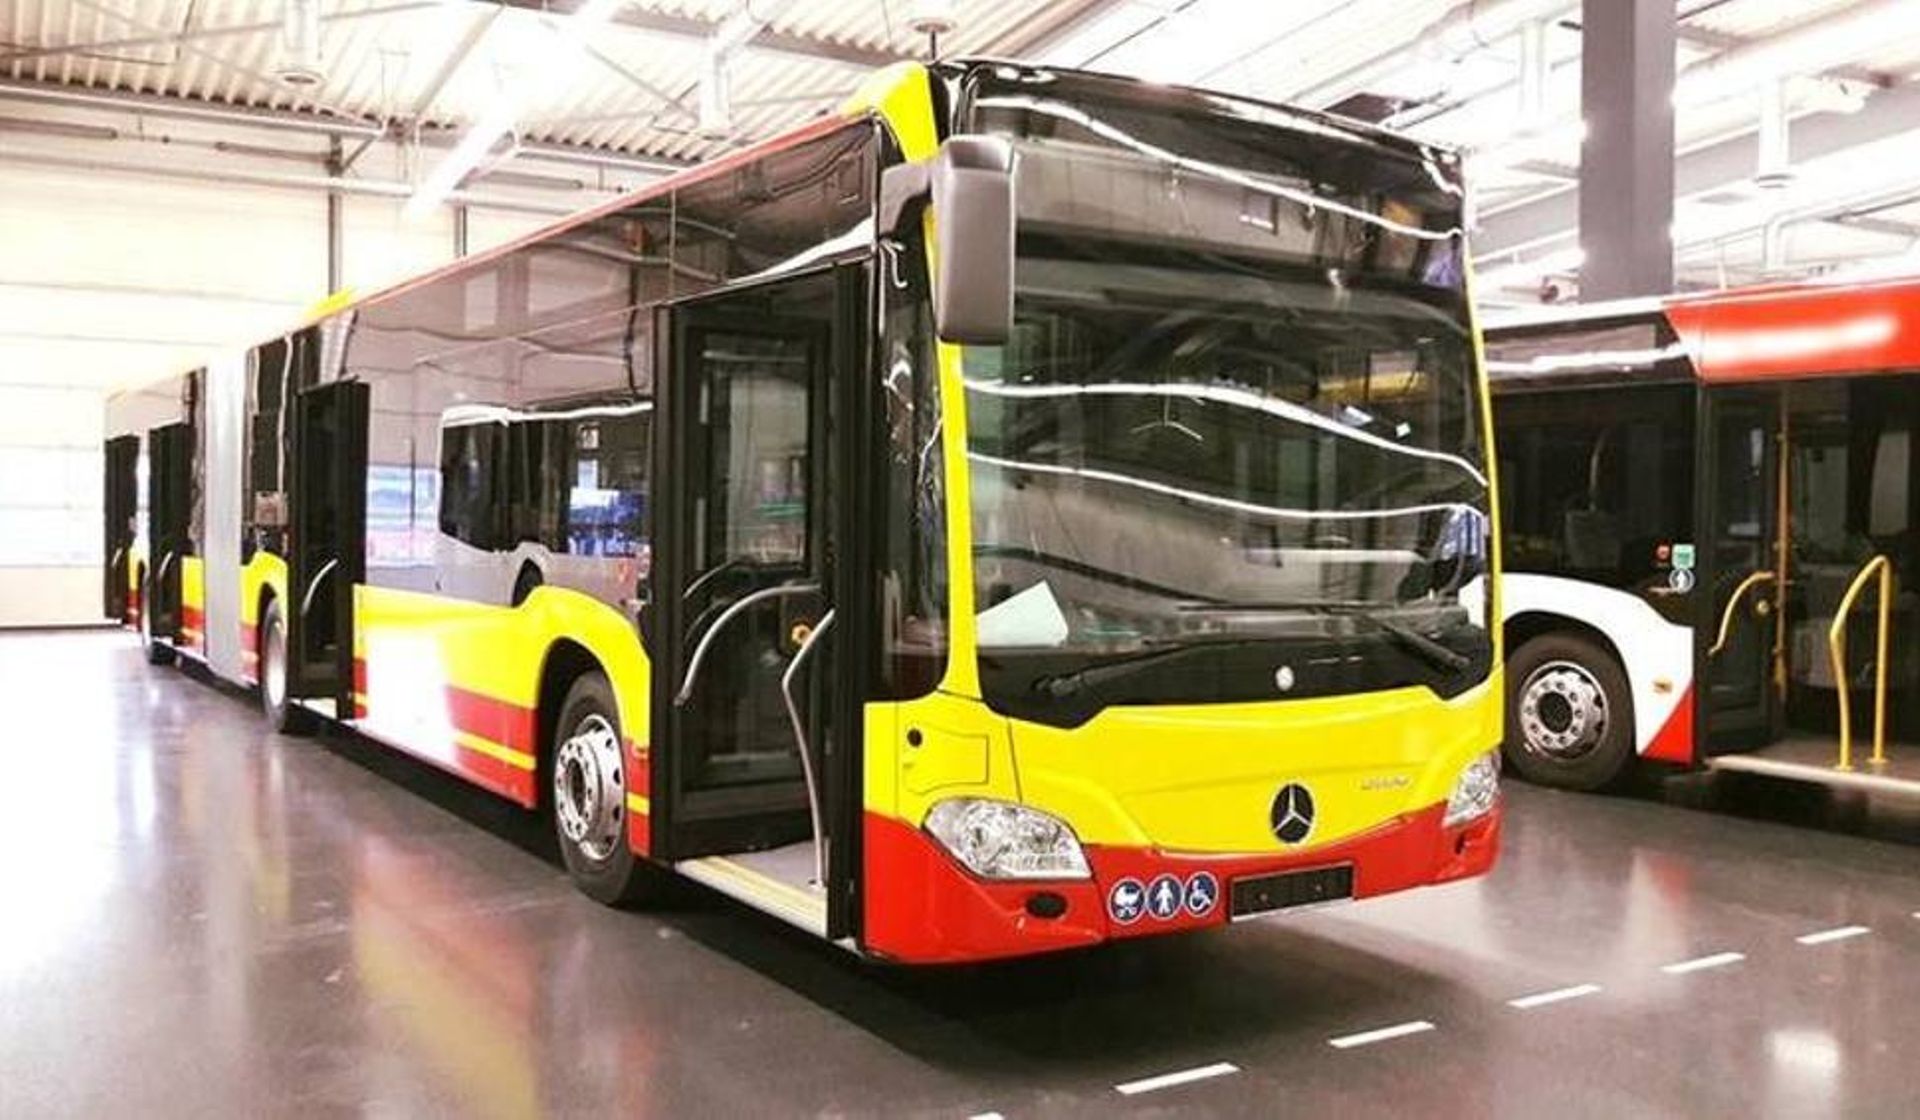 To jednak Mercedes a nie MAN dostarczy 50 nowych autobusów dla MPK Wrocław